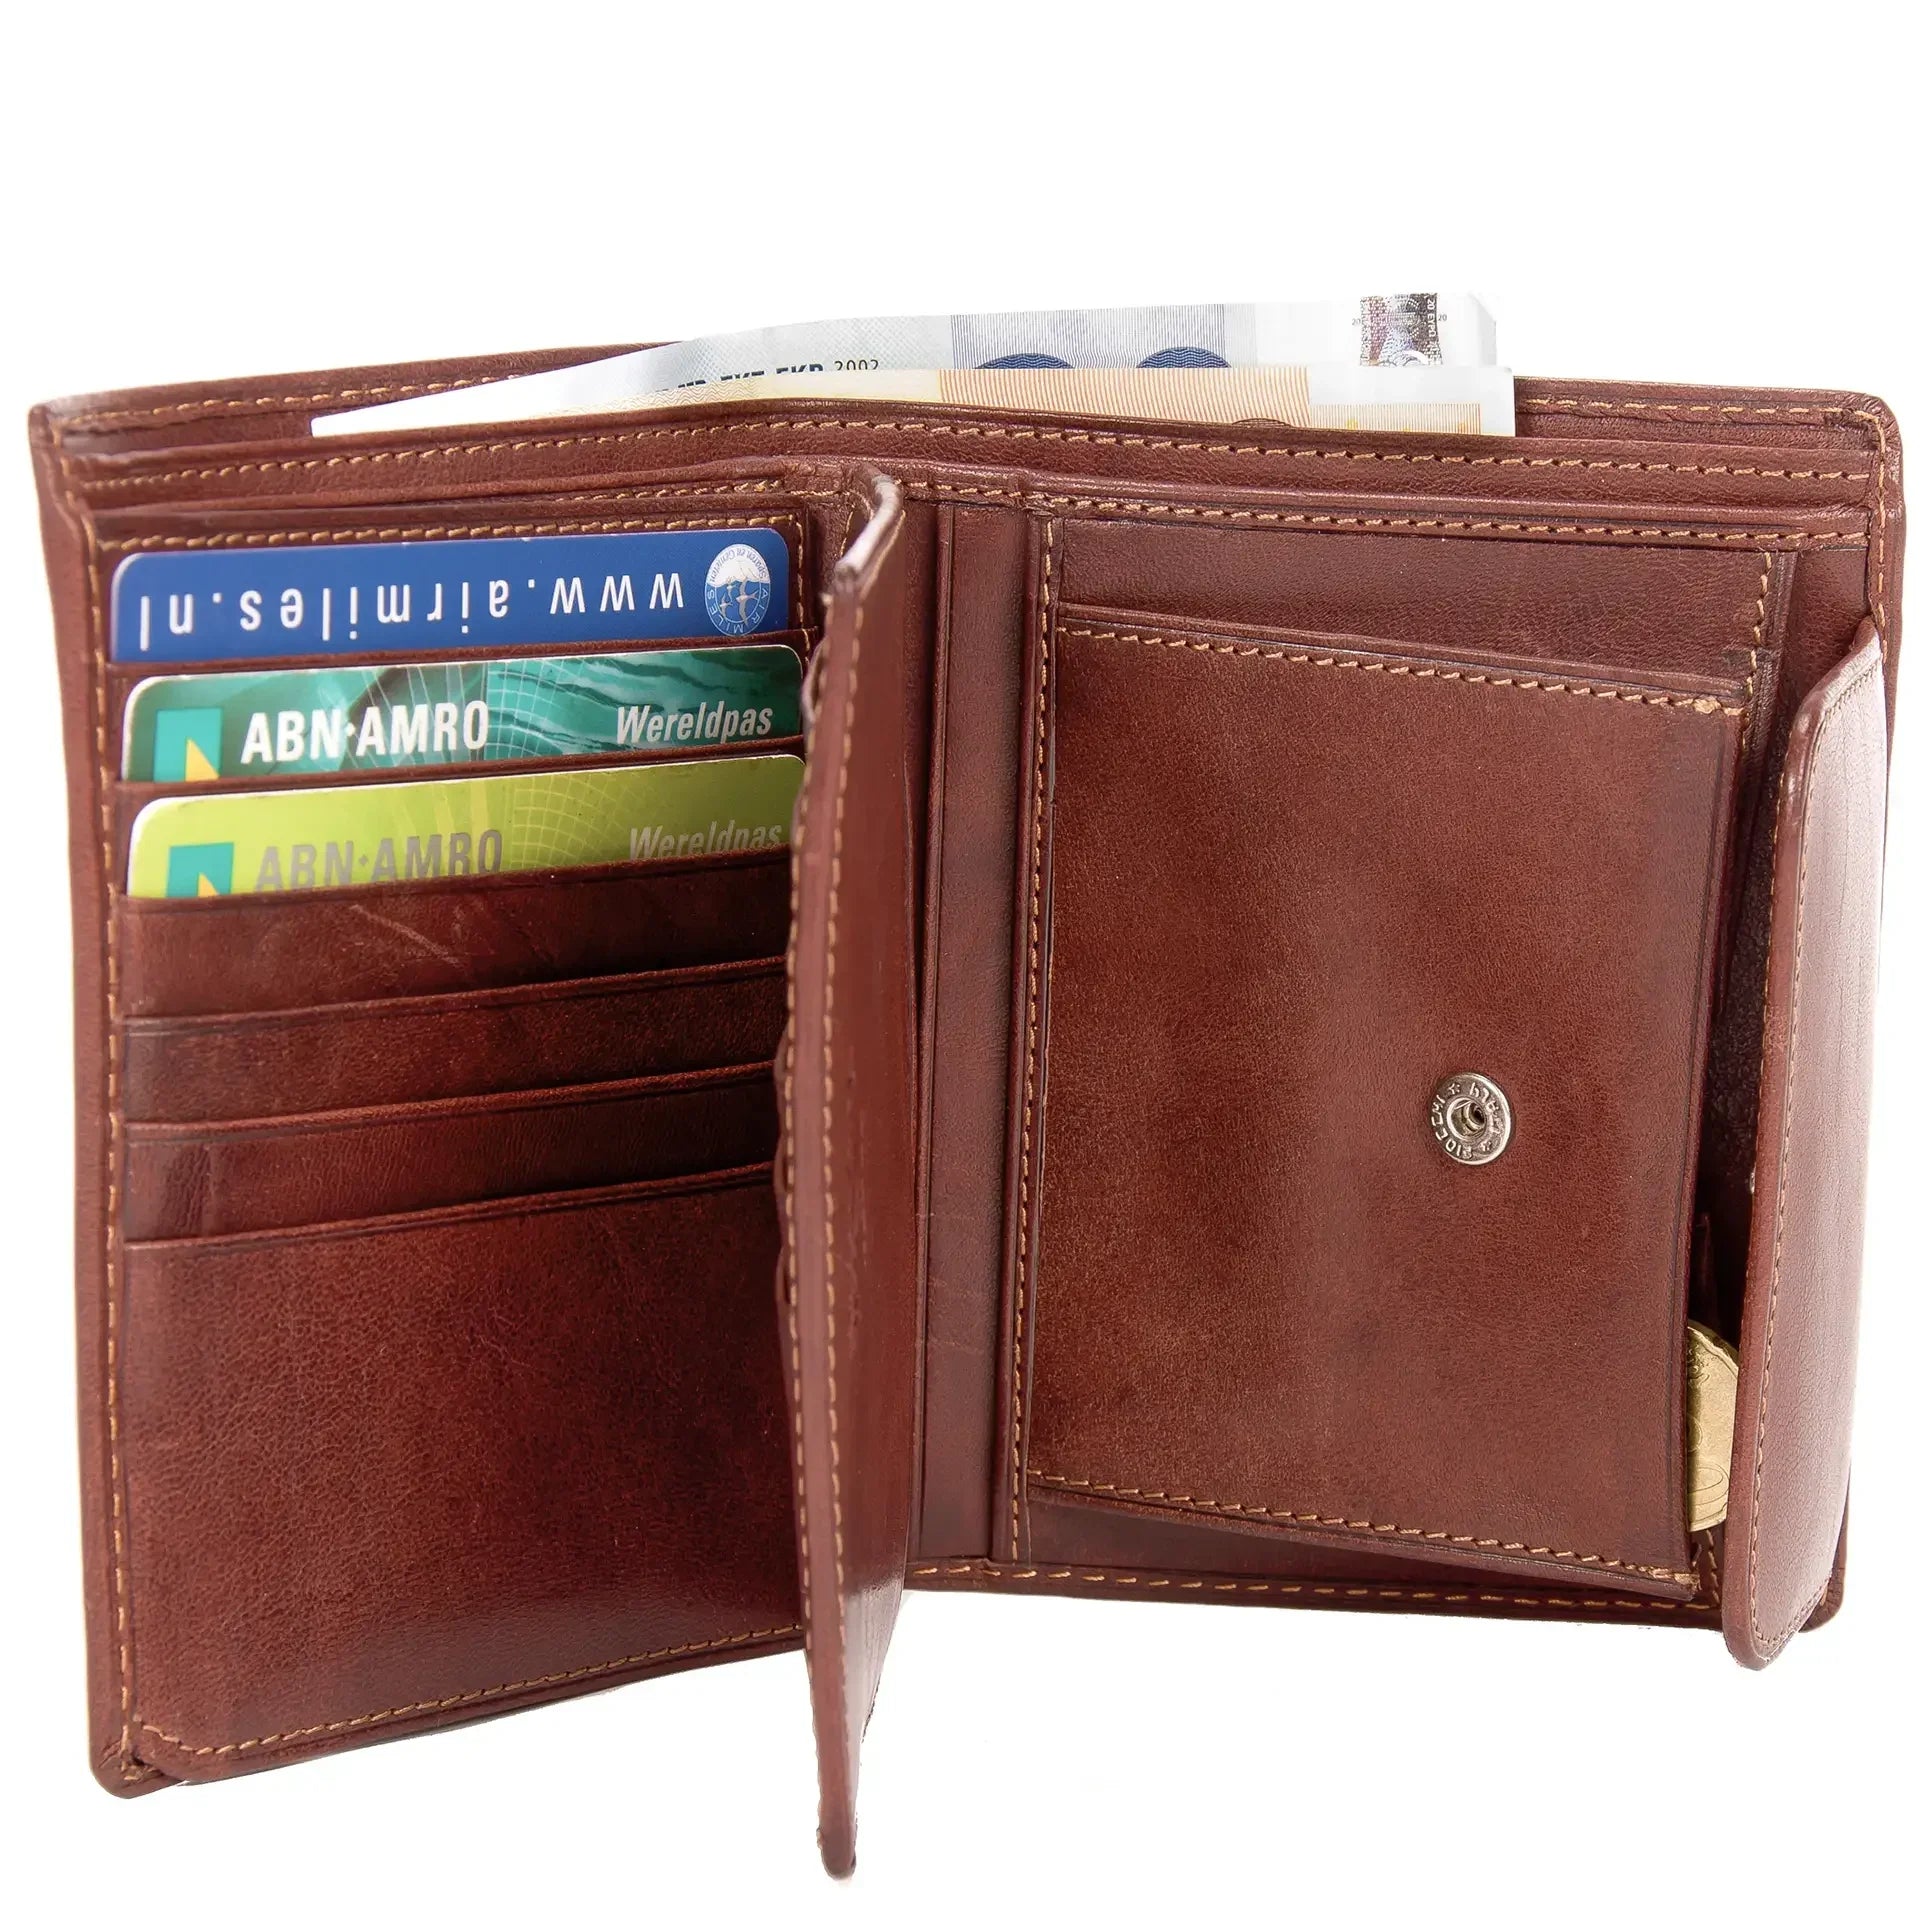 Tony Perotti Furbo Billfold wallet 13 cm - Dark brown